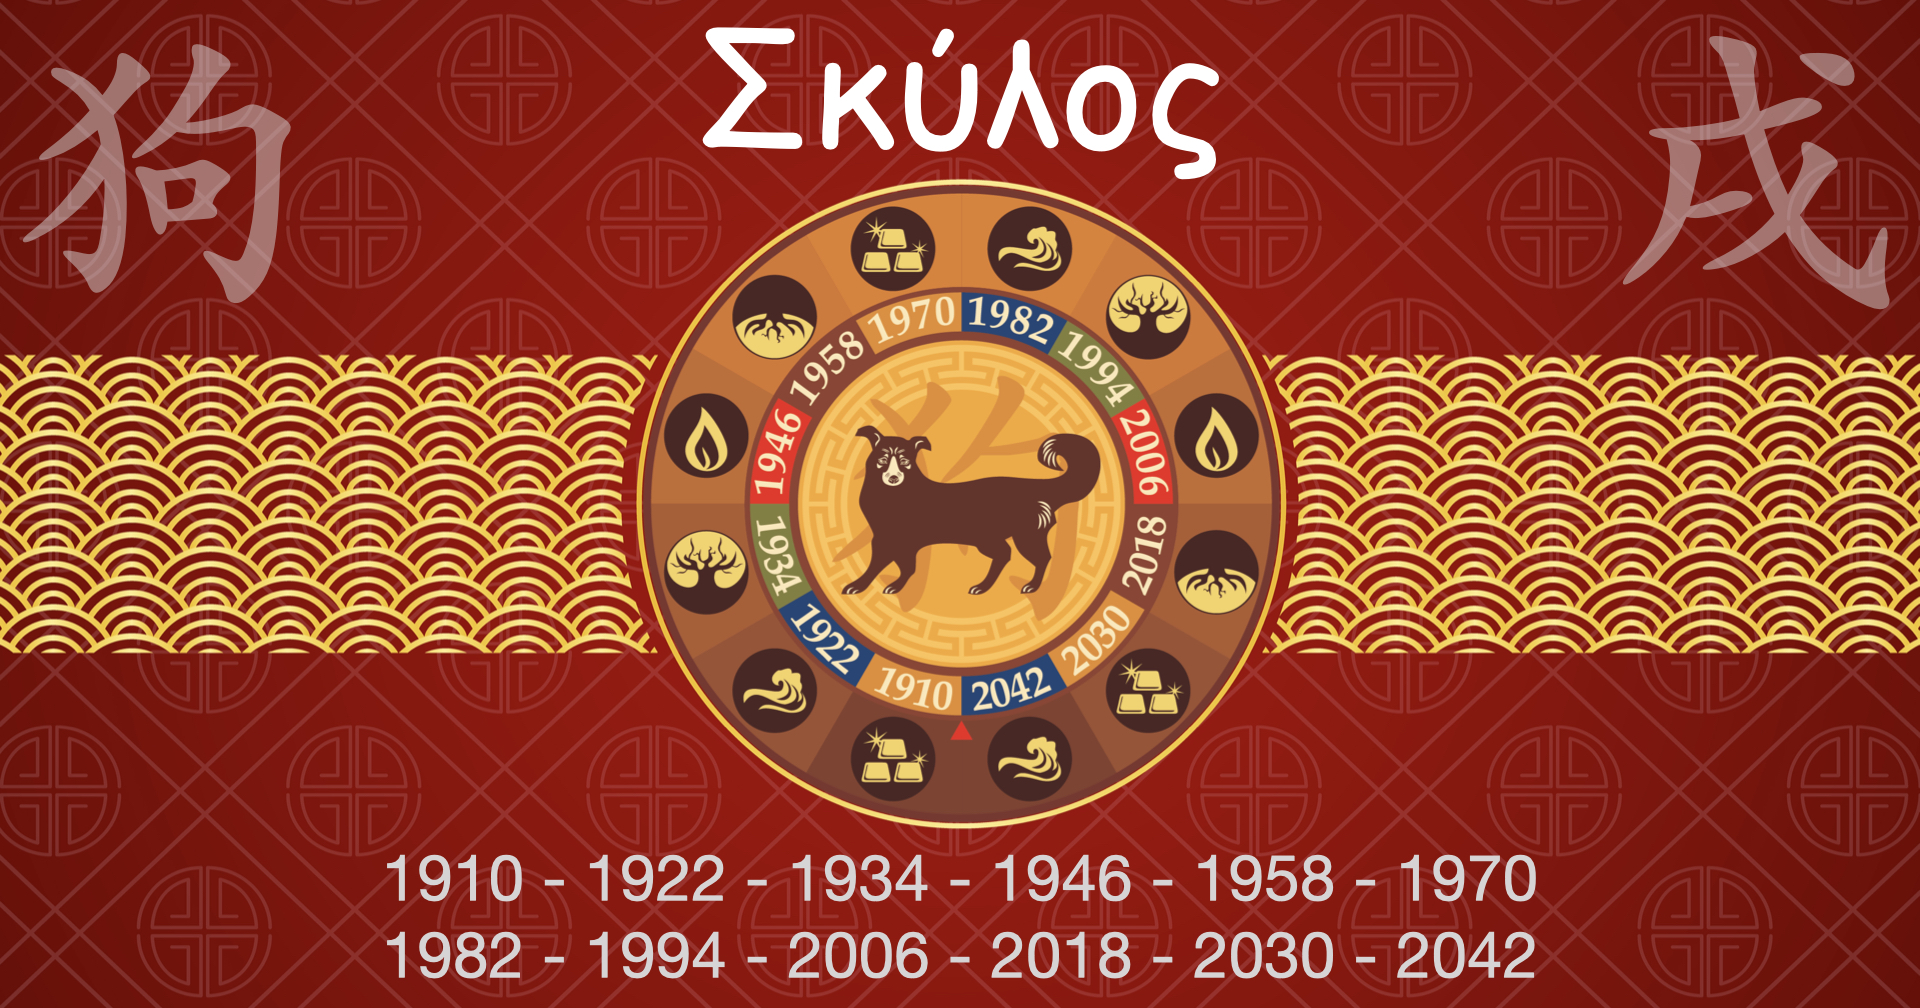 Κινέζικη Αστρολογία - Σκύλος